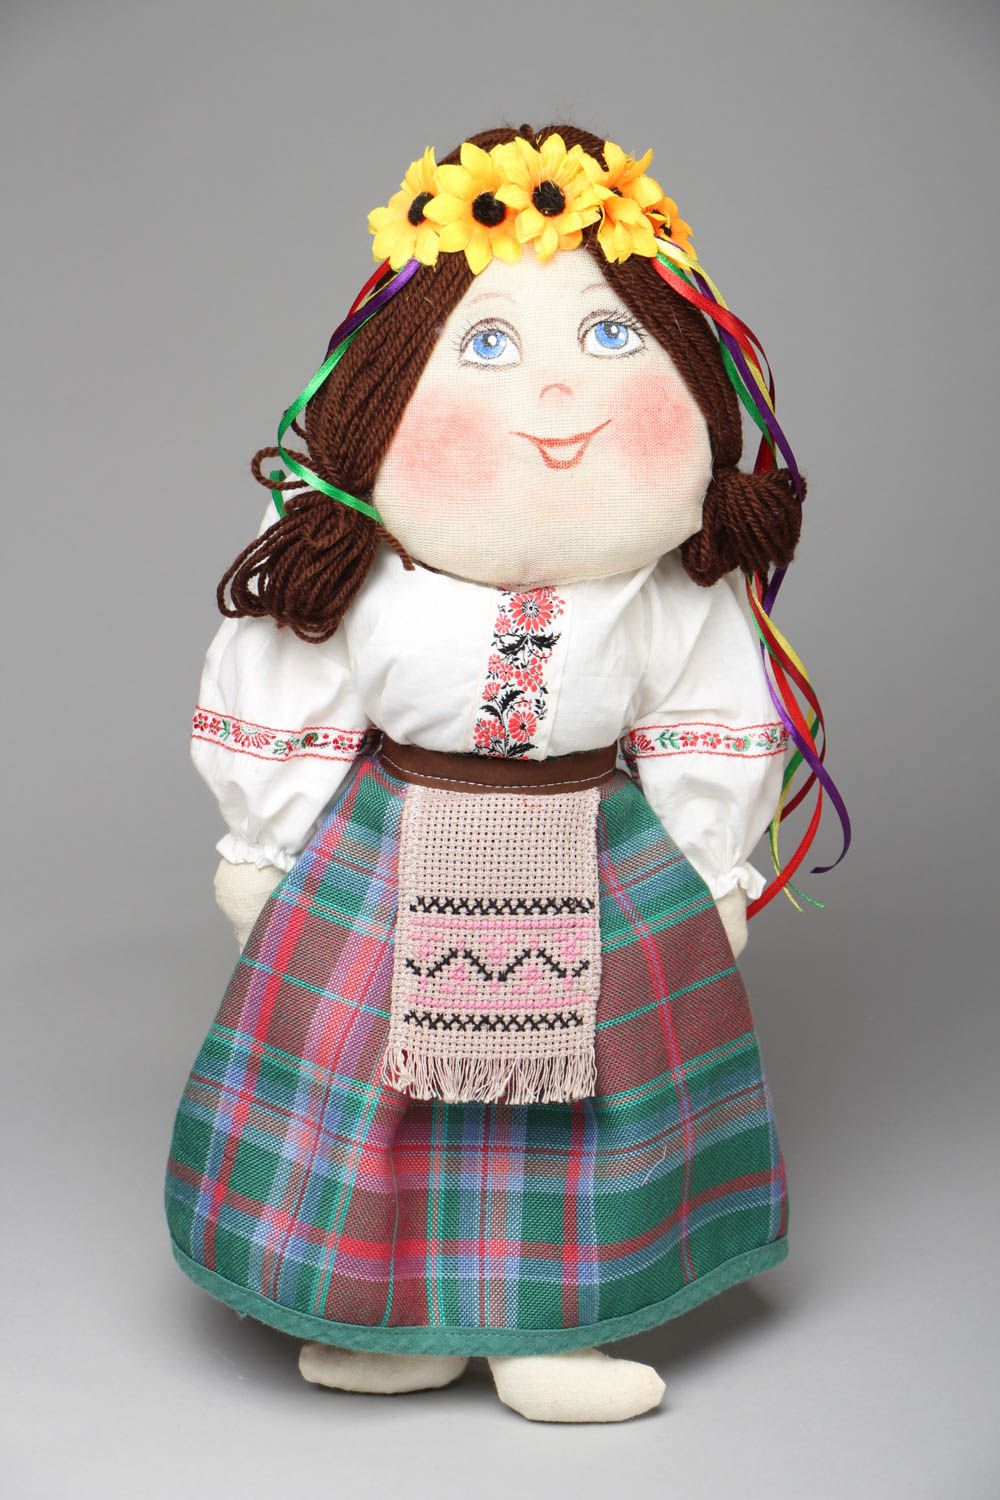 Textil Puppe mit Kranz foto 1